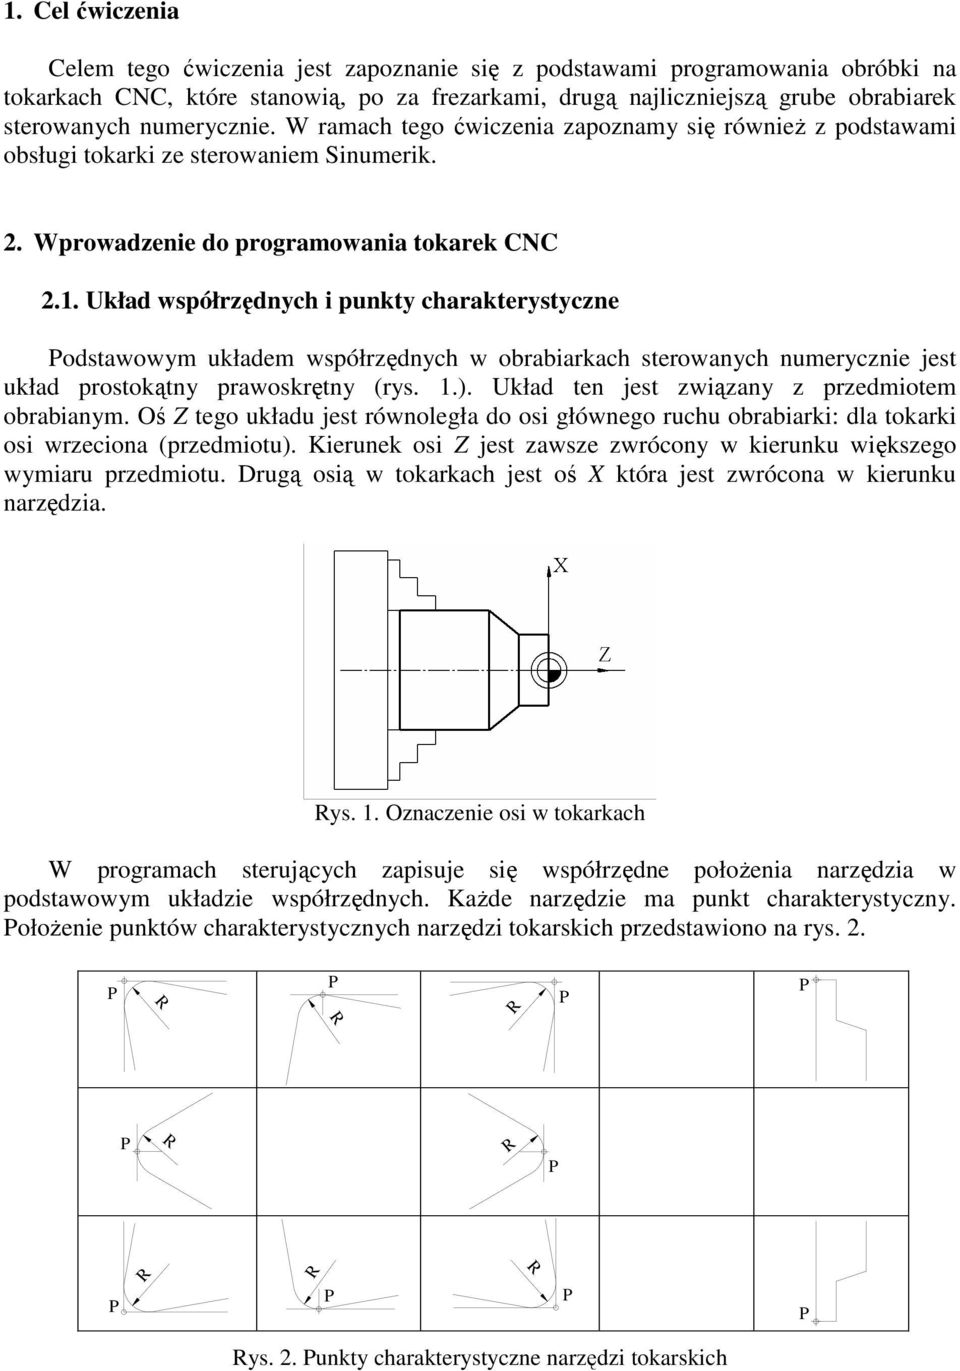 Układ współrzędnych i punkty charakterystyczne odstawowym układem współrzędnych w obrabiarkach sterowanych numerycznie jest układ prostokątny prawoskrętny (rys. 1.).